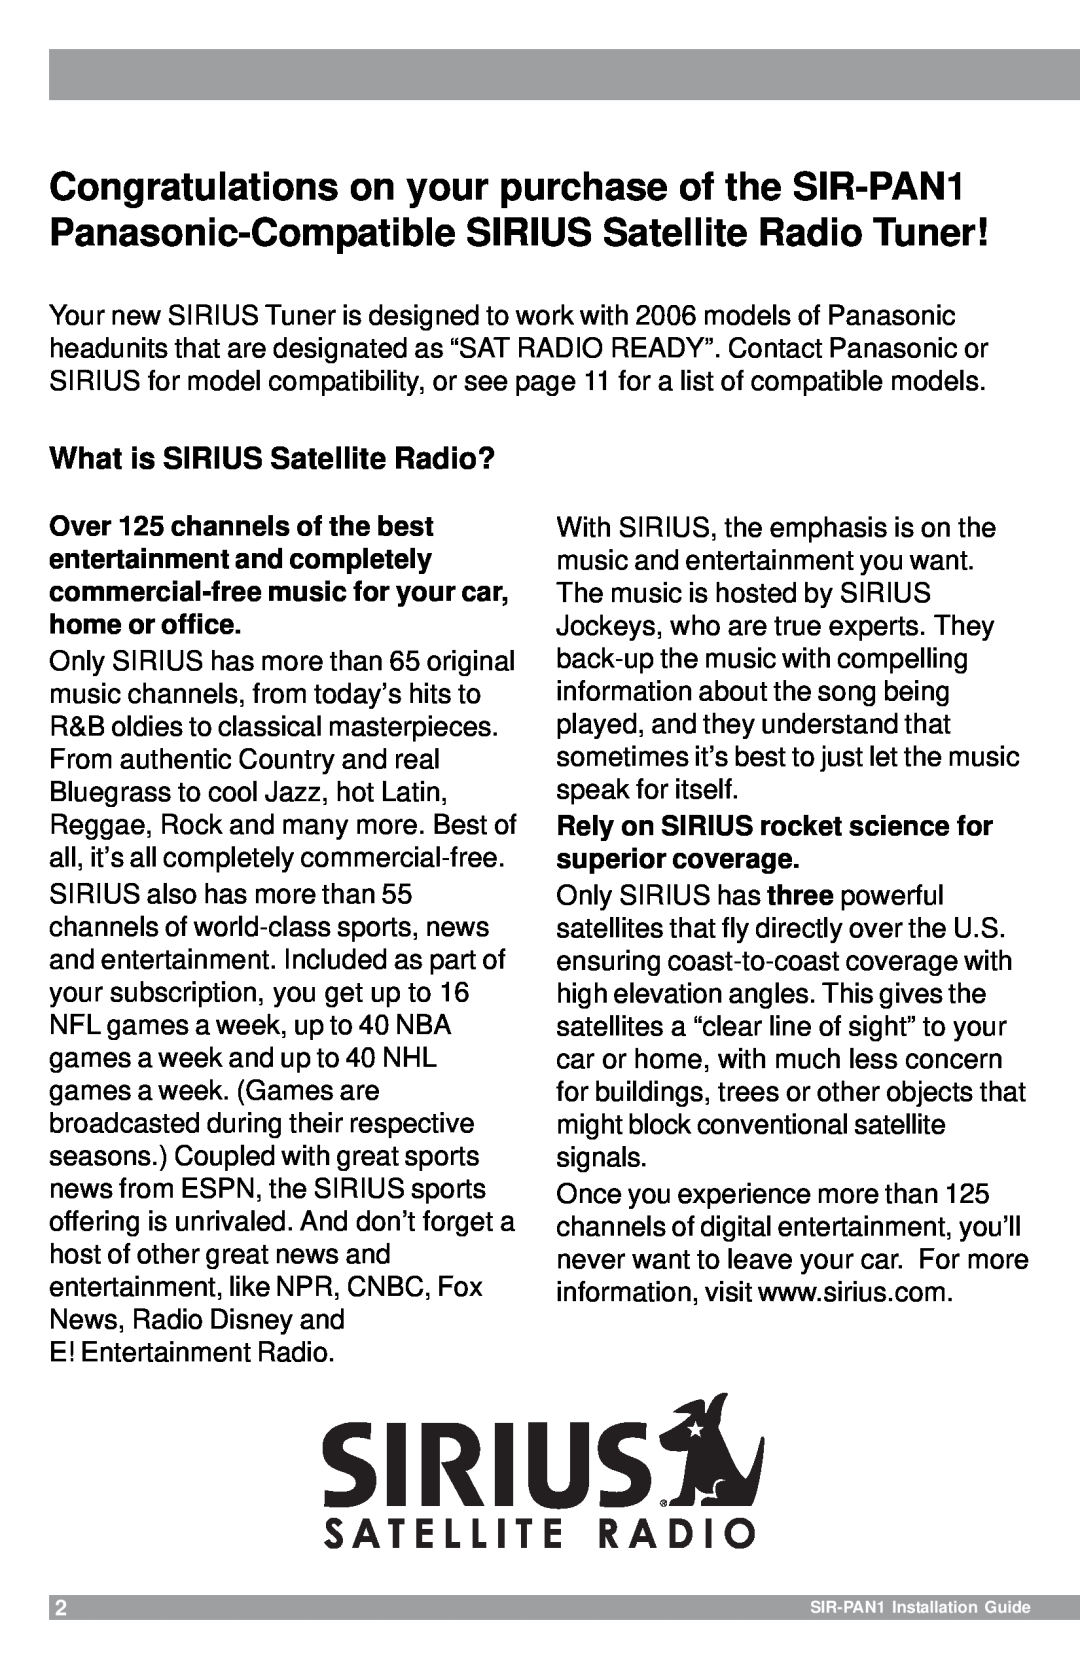 Sirius Satellite Radio SIR-PAN1 manual What is SIRIUS Satellite Radio? 